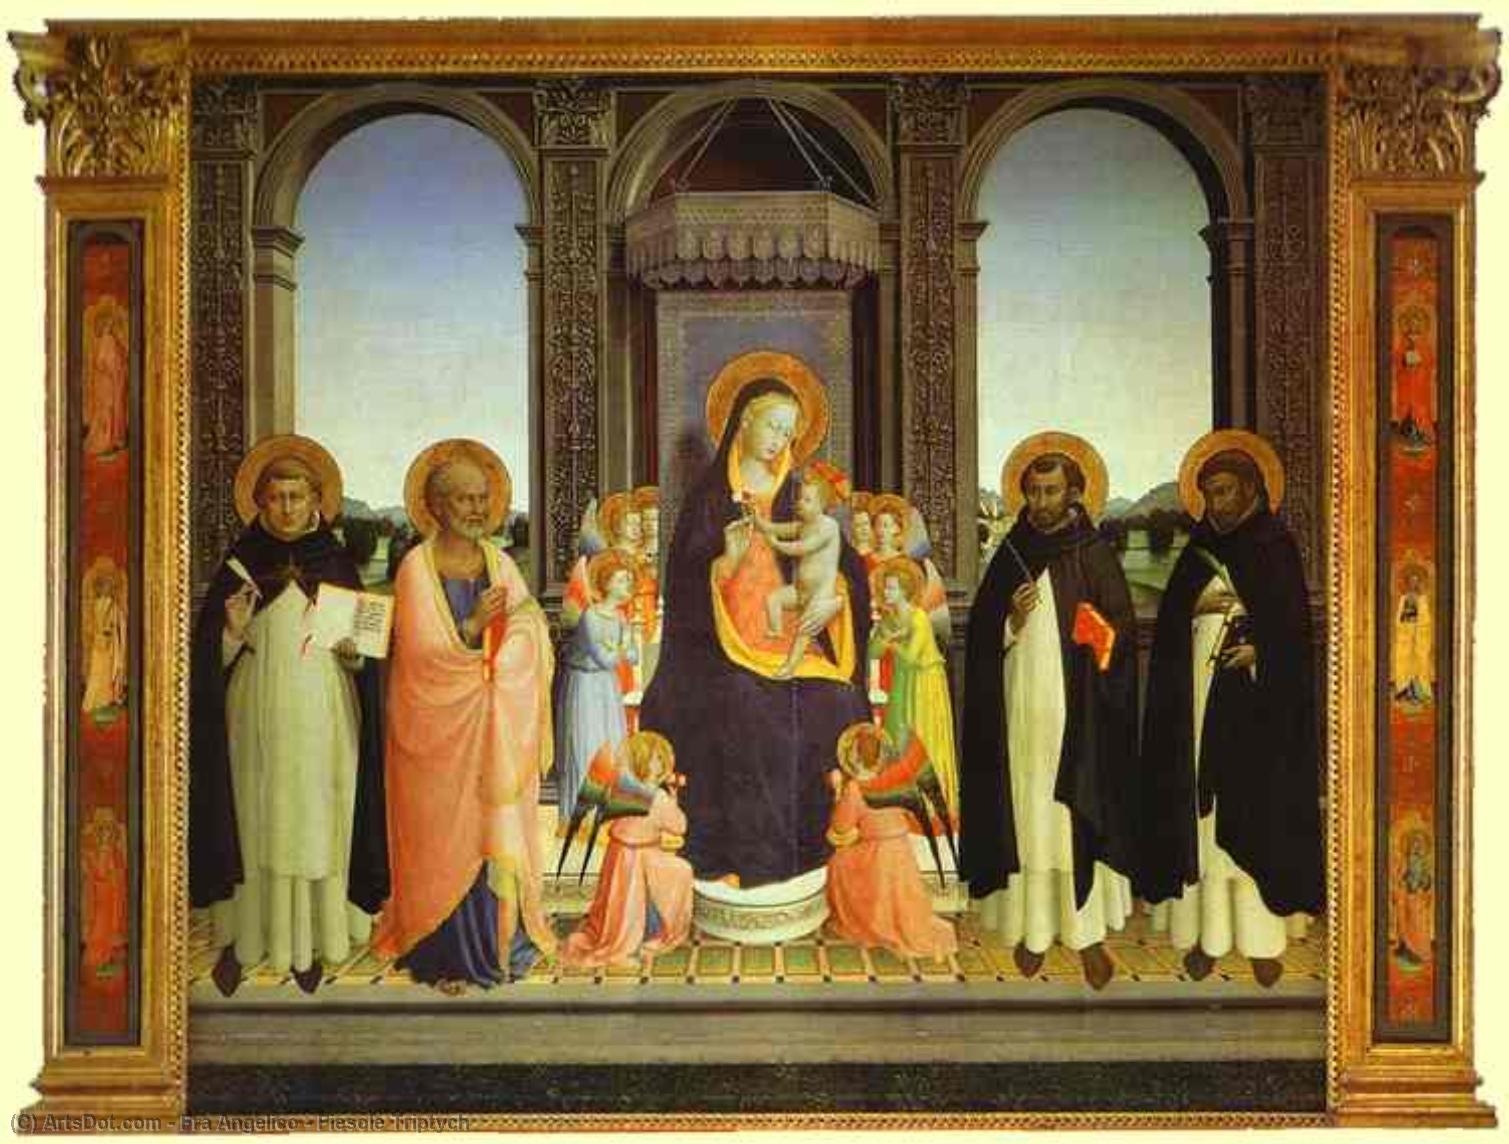 Wikioo.org - Bách khoa toàn thư về mỹ thuật - Vẽ tranh, Tác phẩm nghệ thuật Fra Angelico - Fiesole Triptych